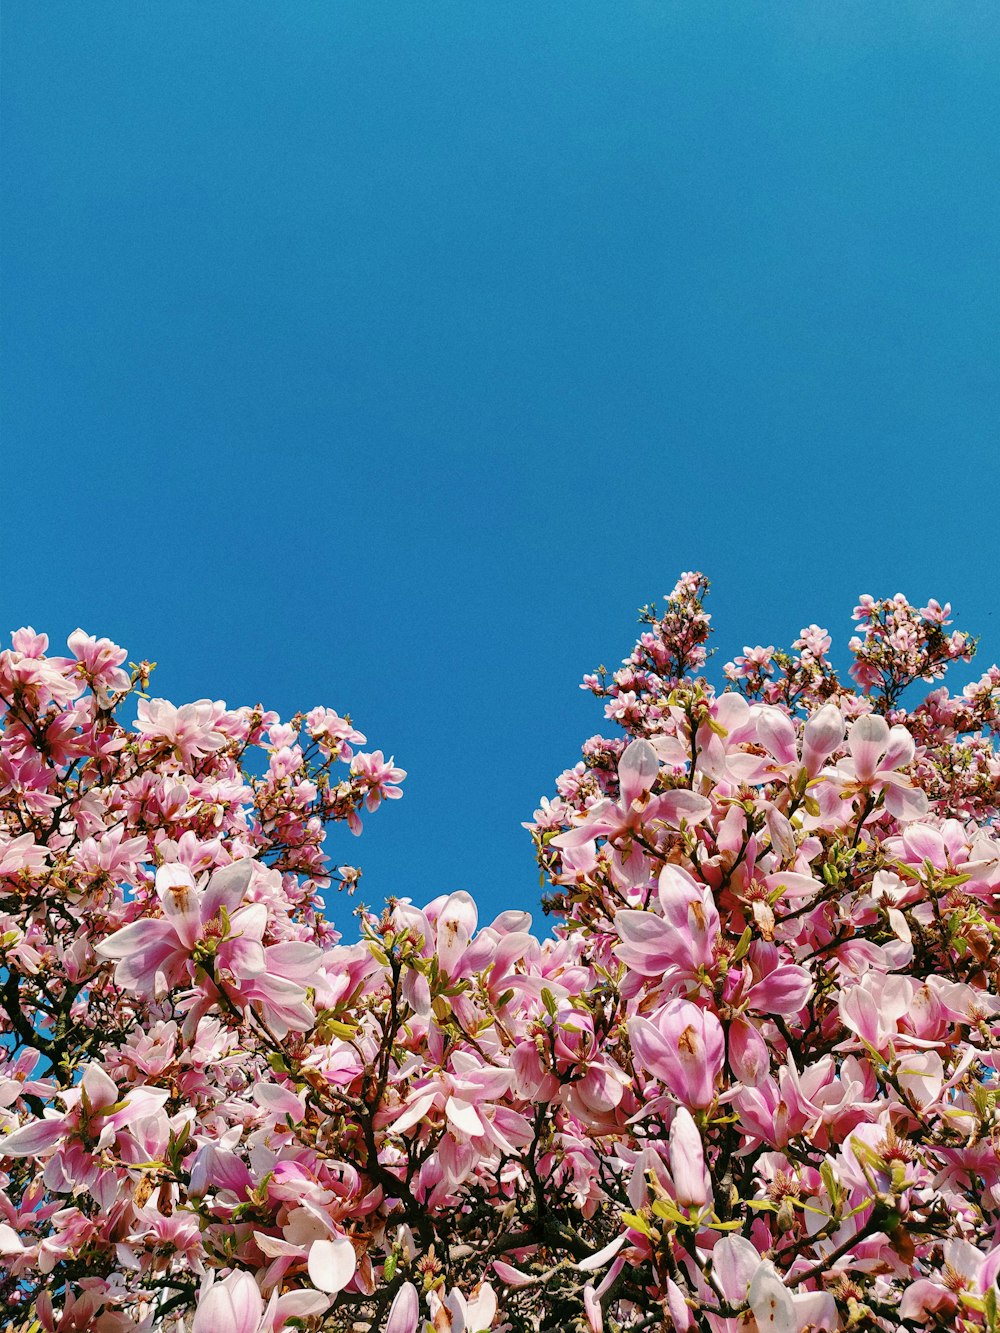 pink petaled flower tree under blue sky during daytime